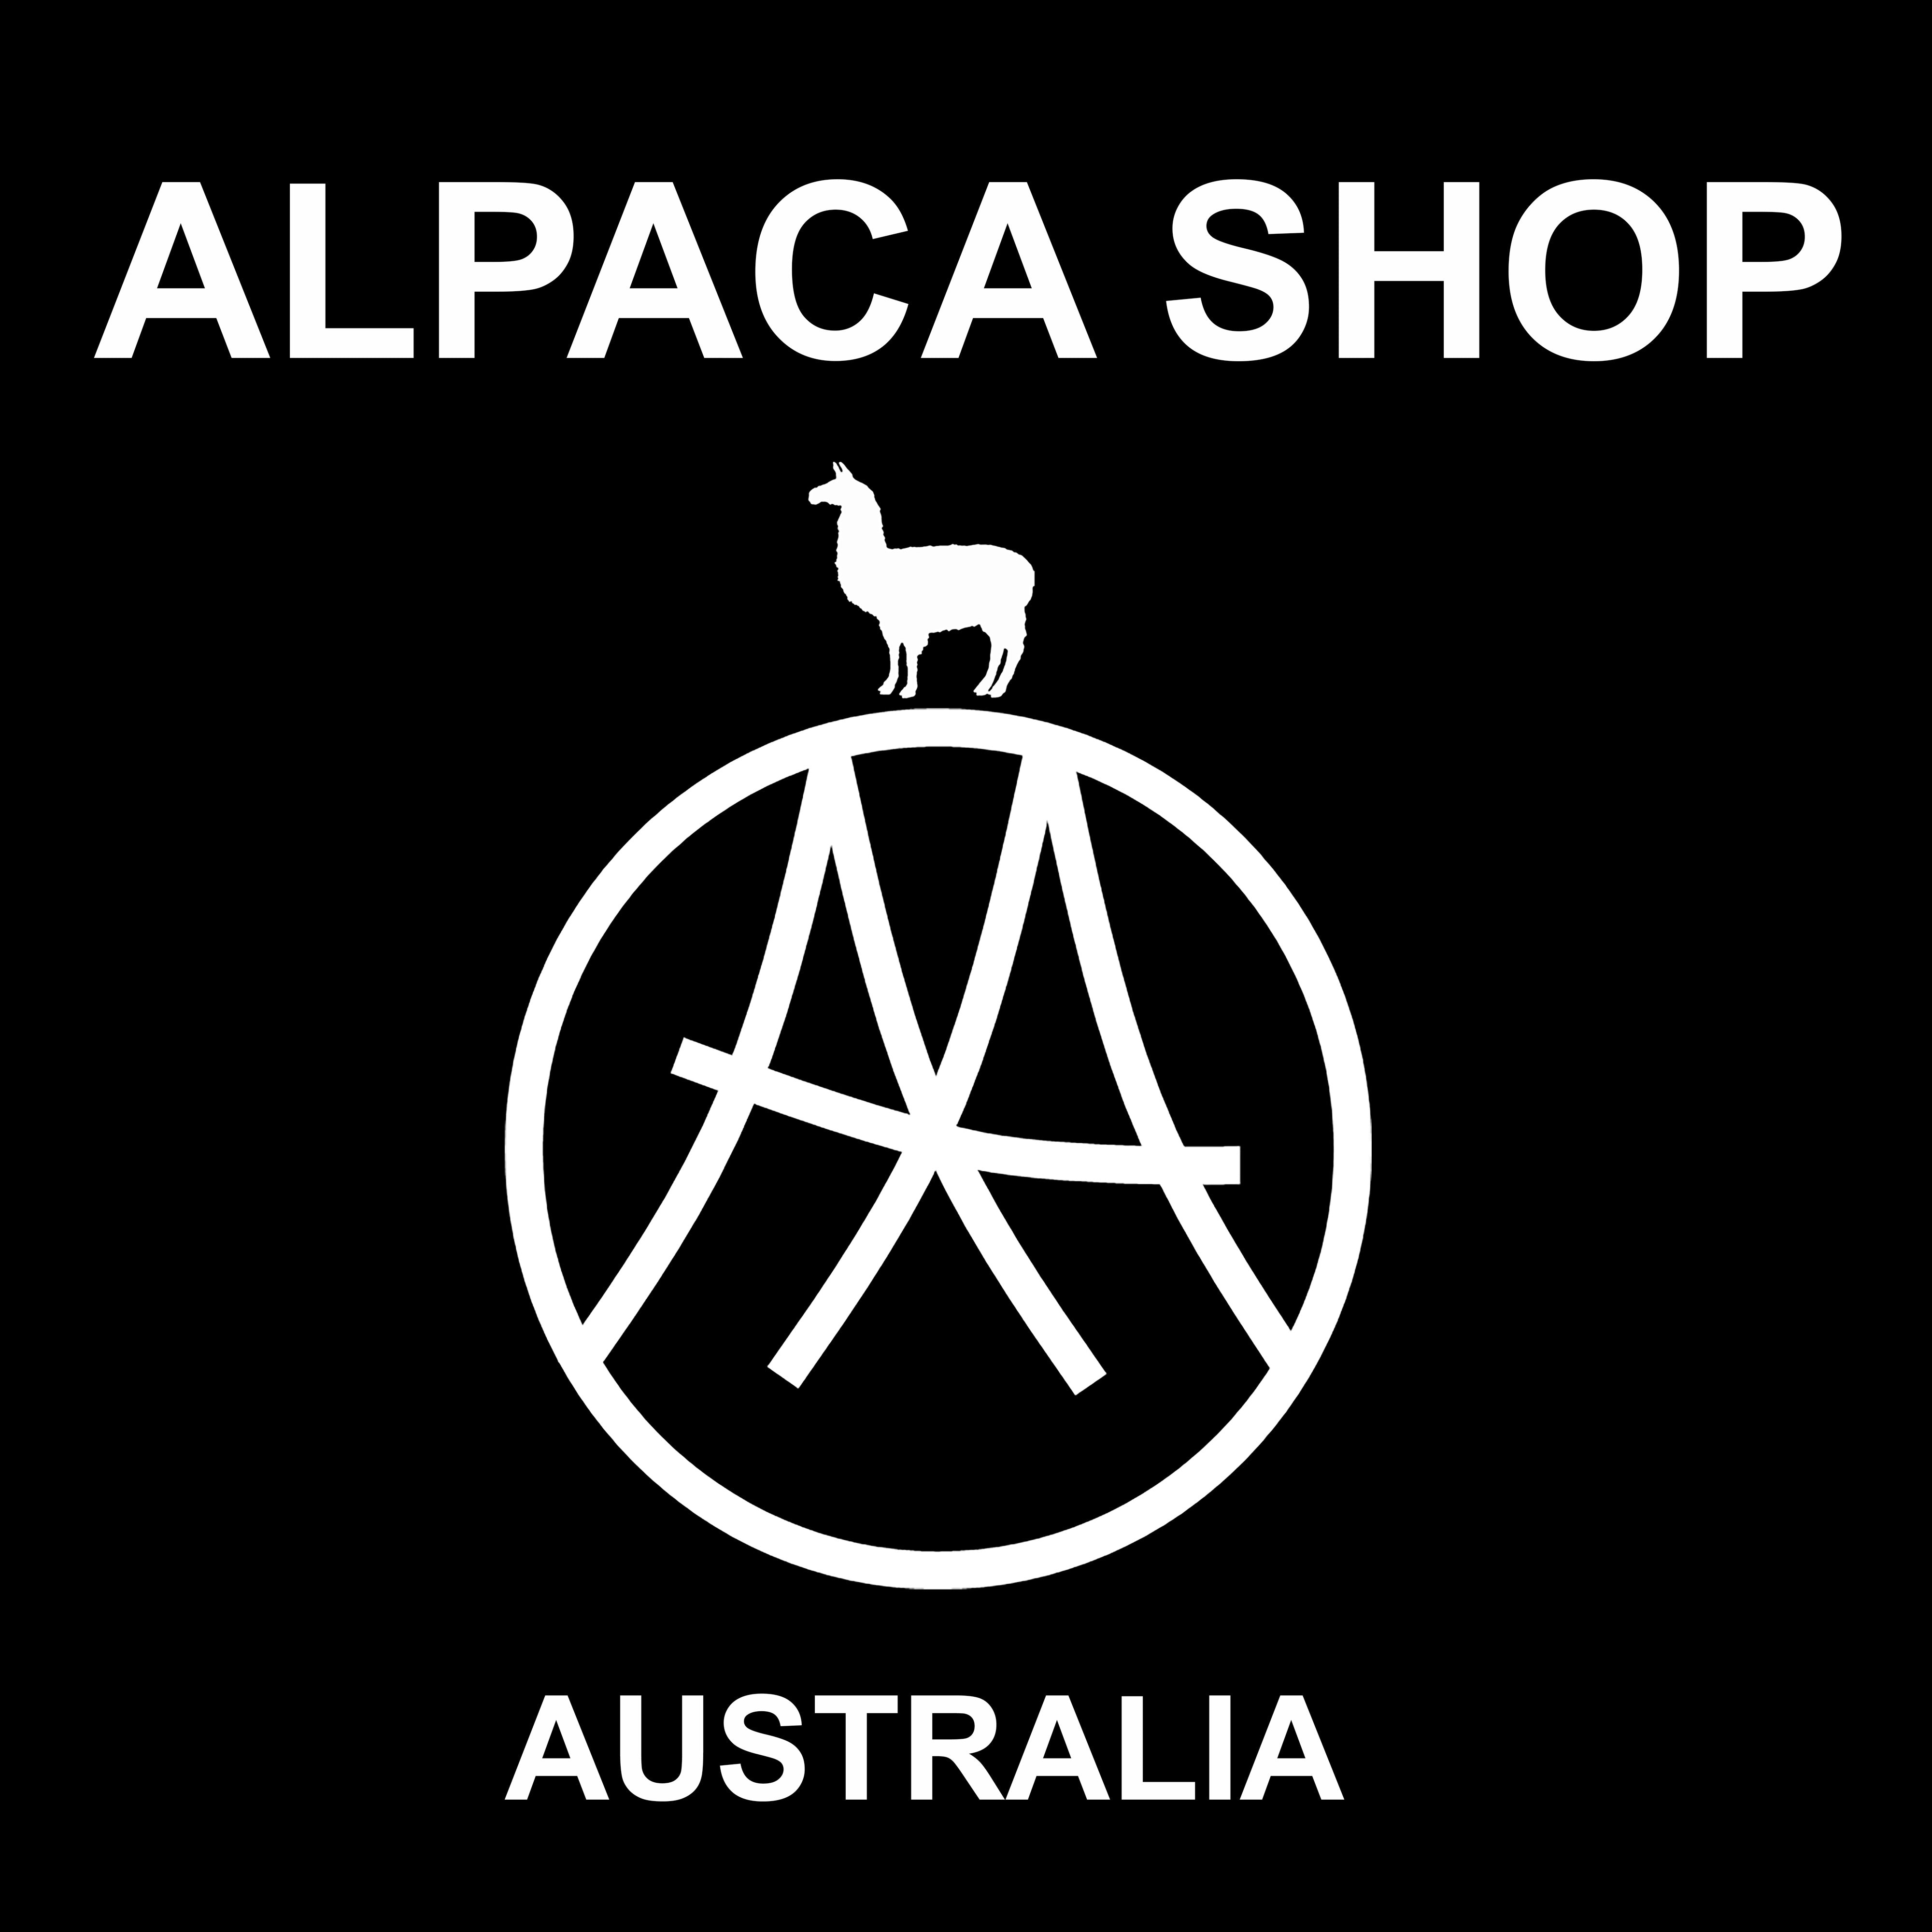 Alpaca Shop Australia